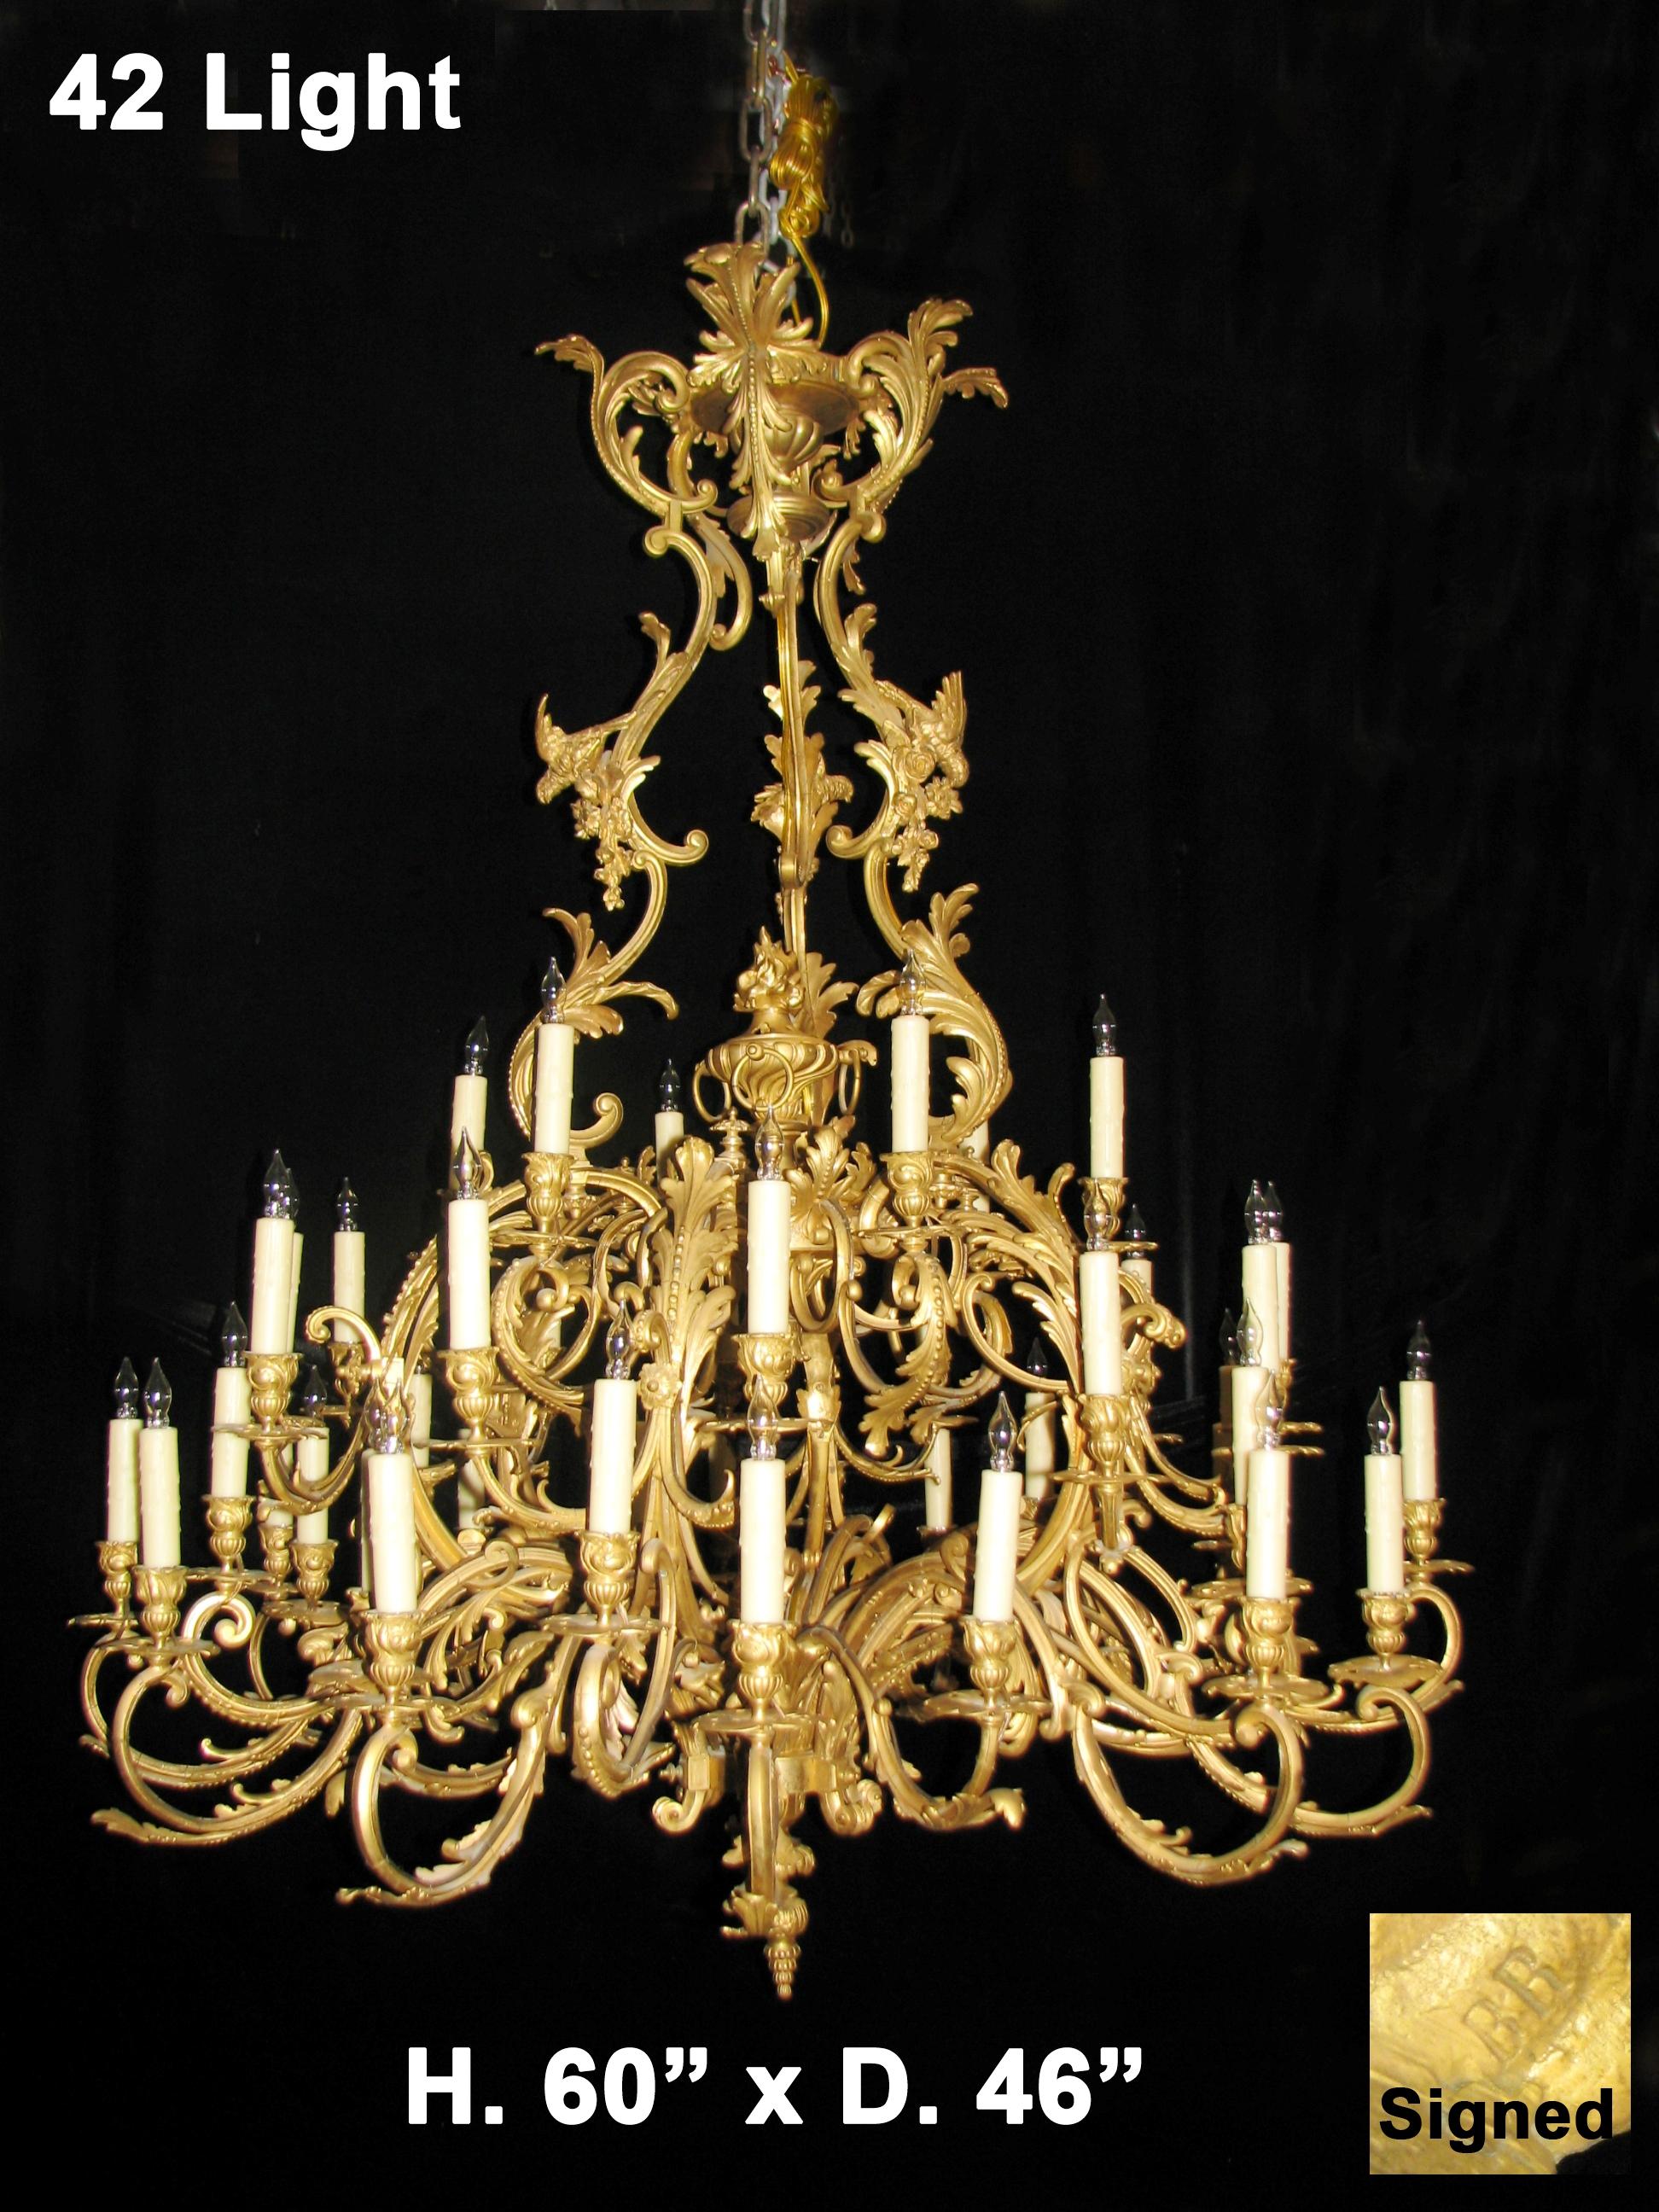 Sensationnel lustre de style Louis XV en bronze doré à deux niveaux à 42 lumières avec oiseaux. 
Signé BR. 
L'exquis lustre en bronze doré est surmonté d'une couronne d'acanthe en bronze doré, jointe à des supports à double volute et à motif de